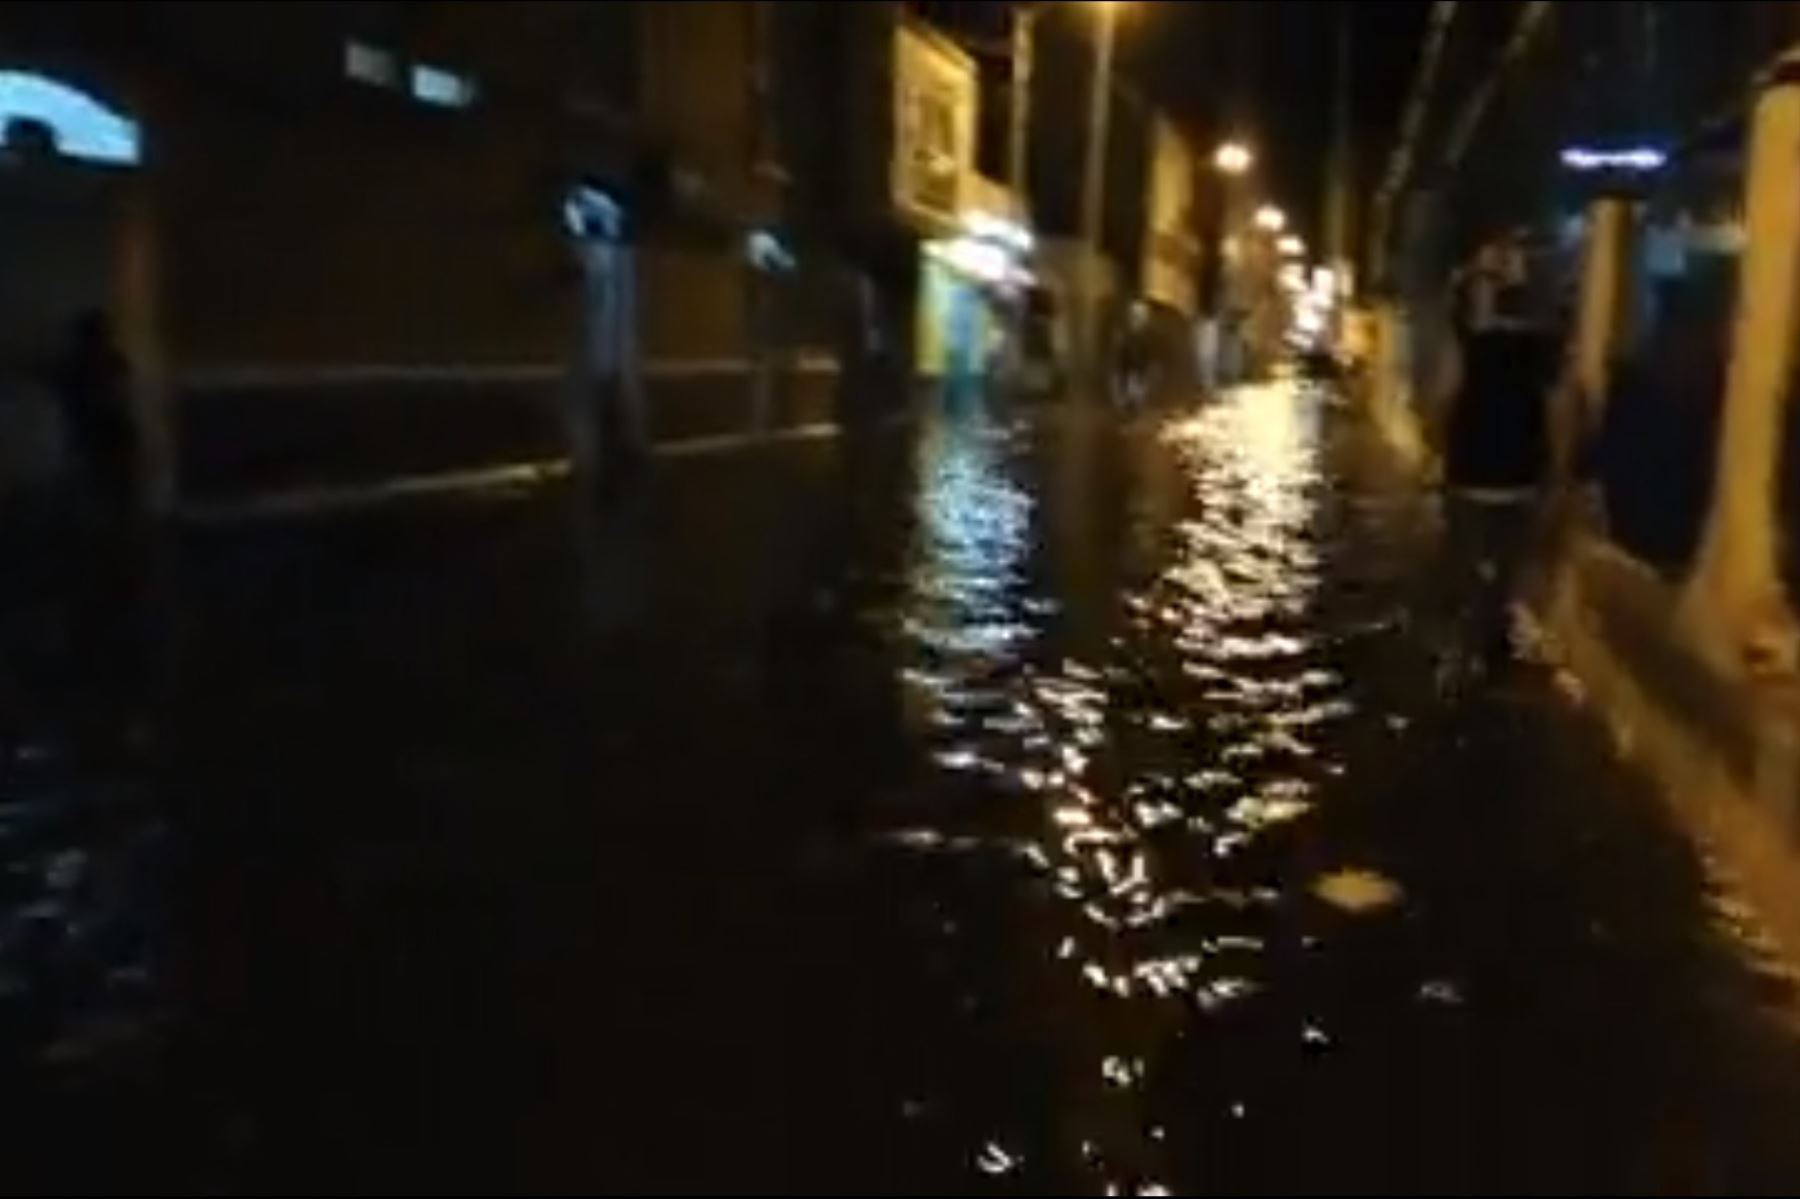 Desborde de canal inunda viviendas, comisaría y calles de la ciudad de Pacasmayo, en La Libertad. Foto: Captura Facebook/Diario Últimas Noticias